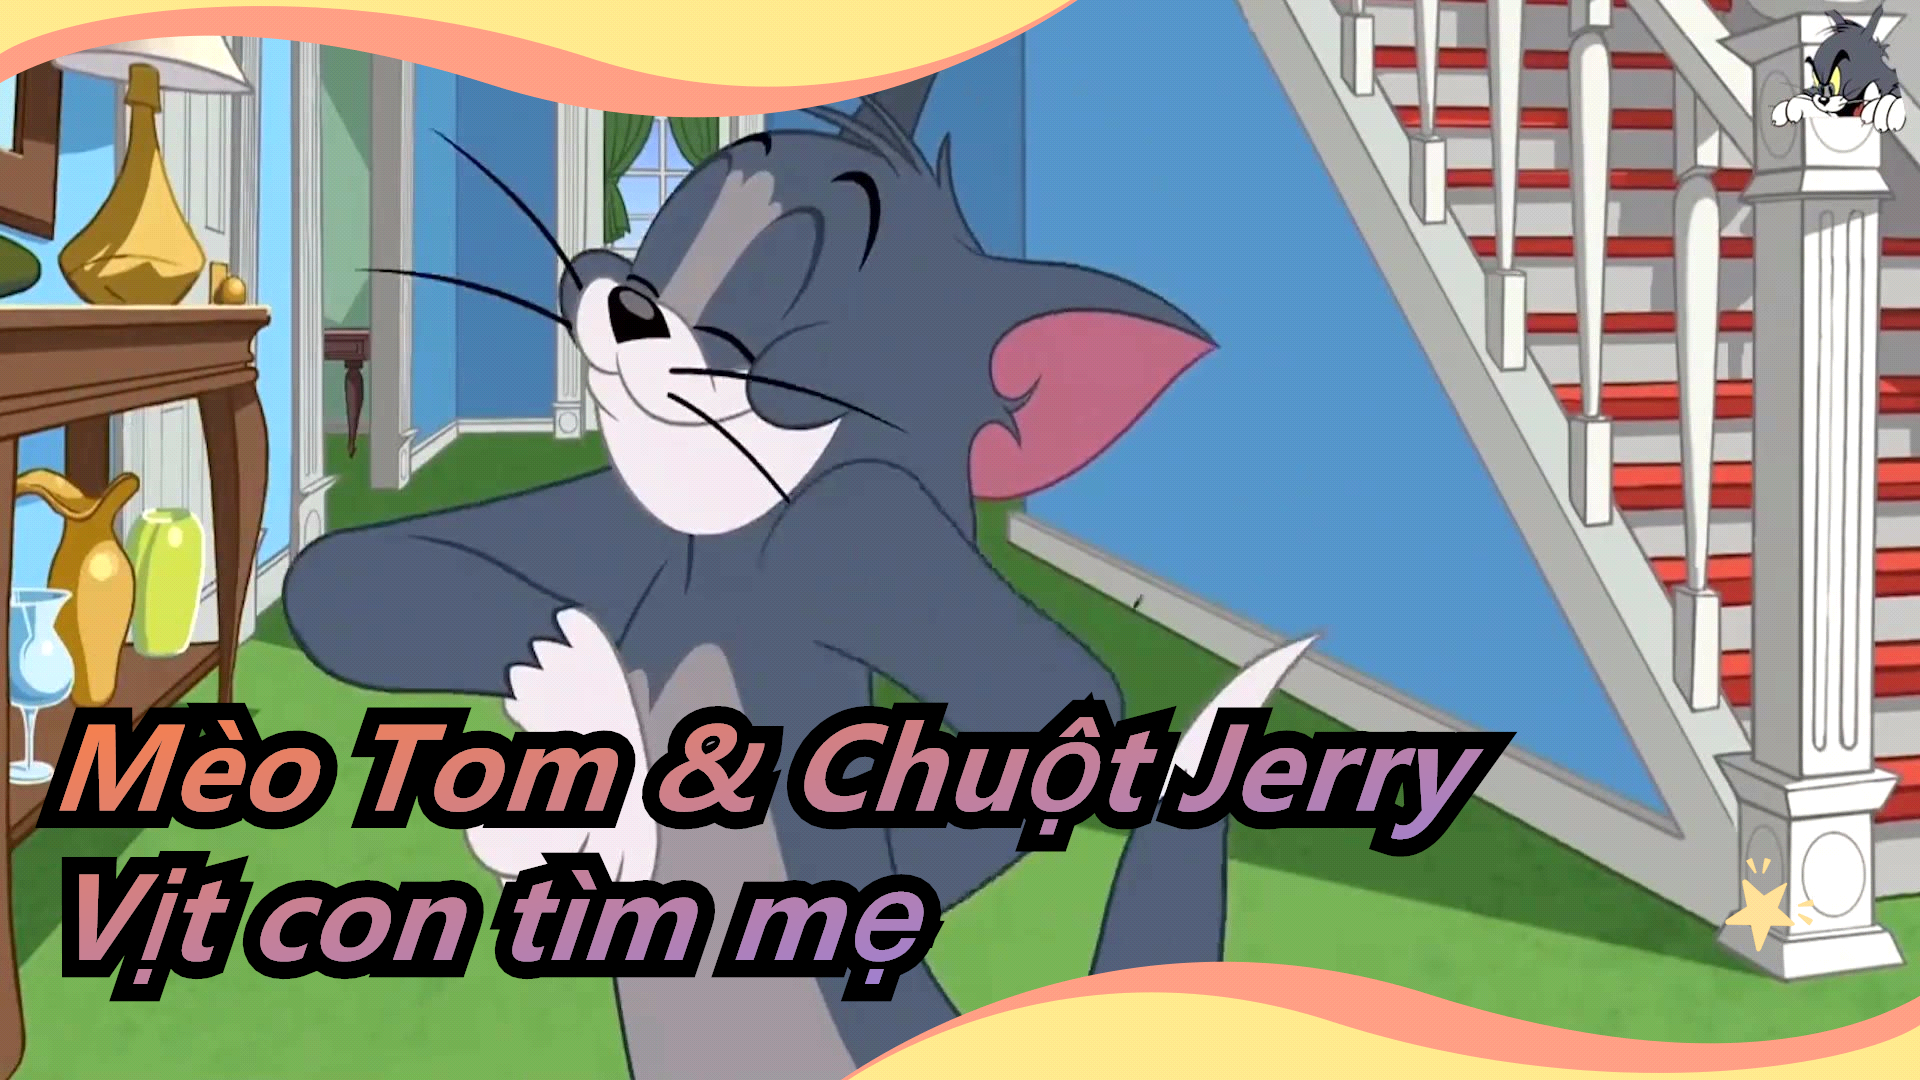 Tom và Jerry không phải tên thật của cặp đôi mèo  chuột kinh điển